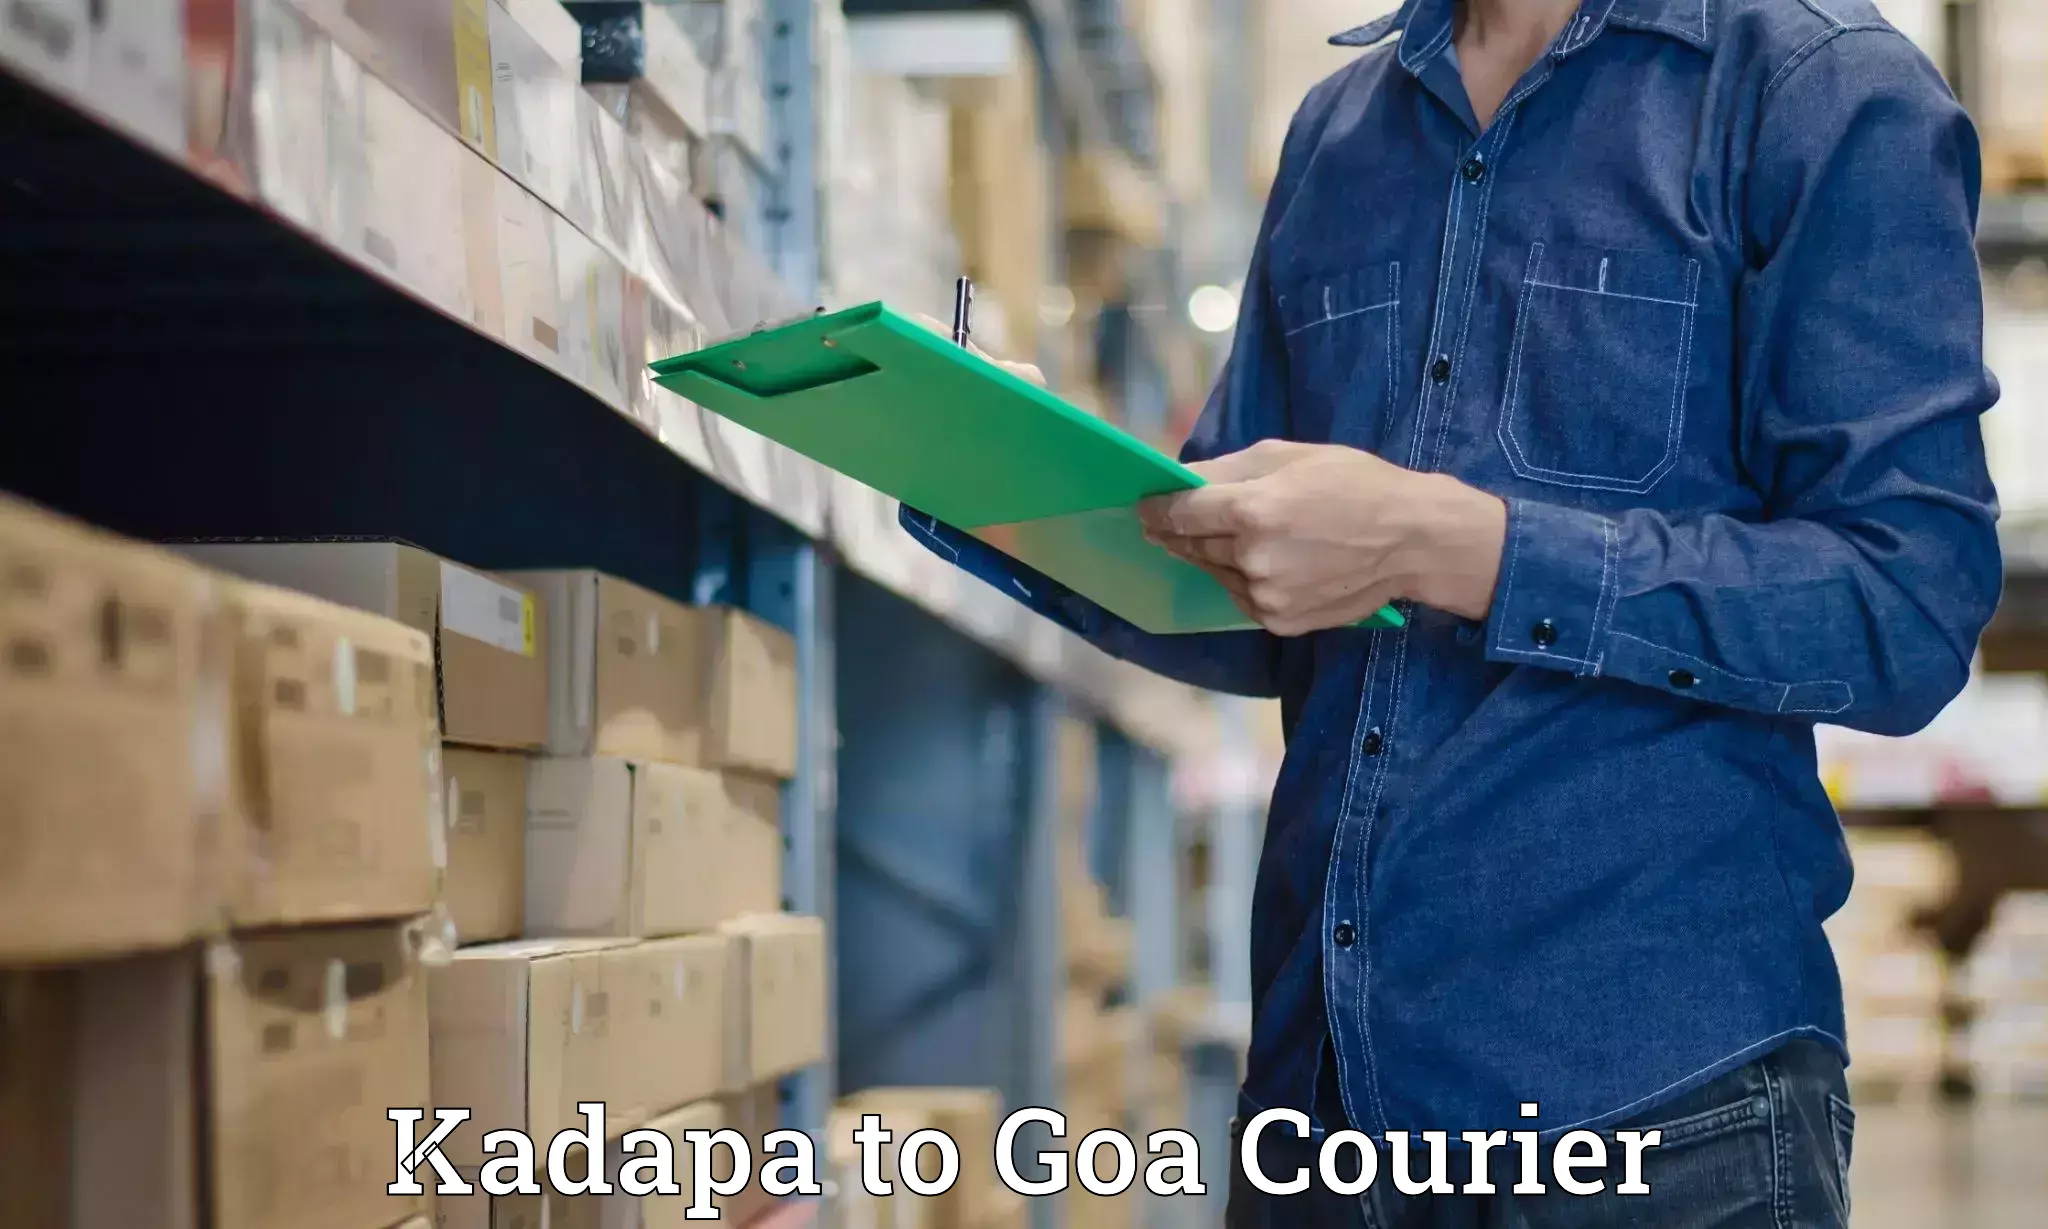 Nationwide shipping coverage Kadapa to Panaji